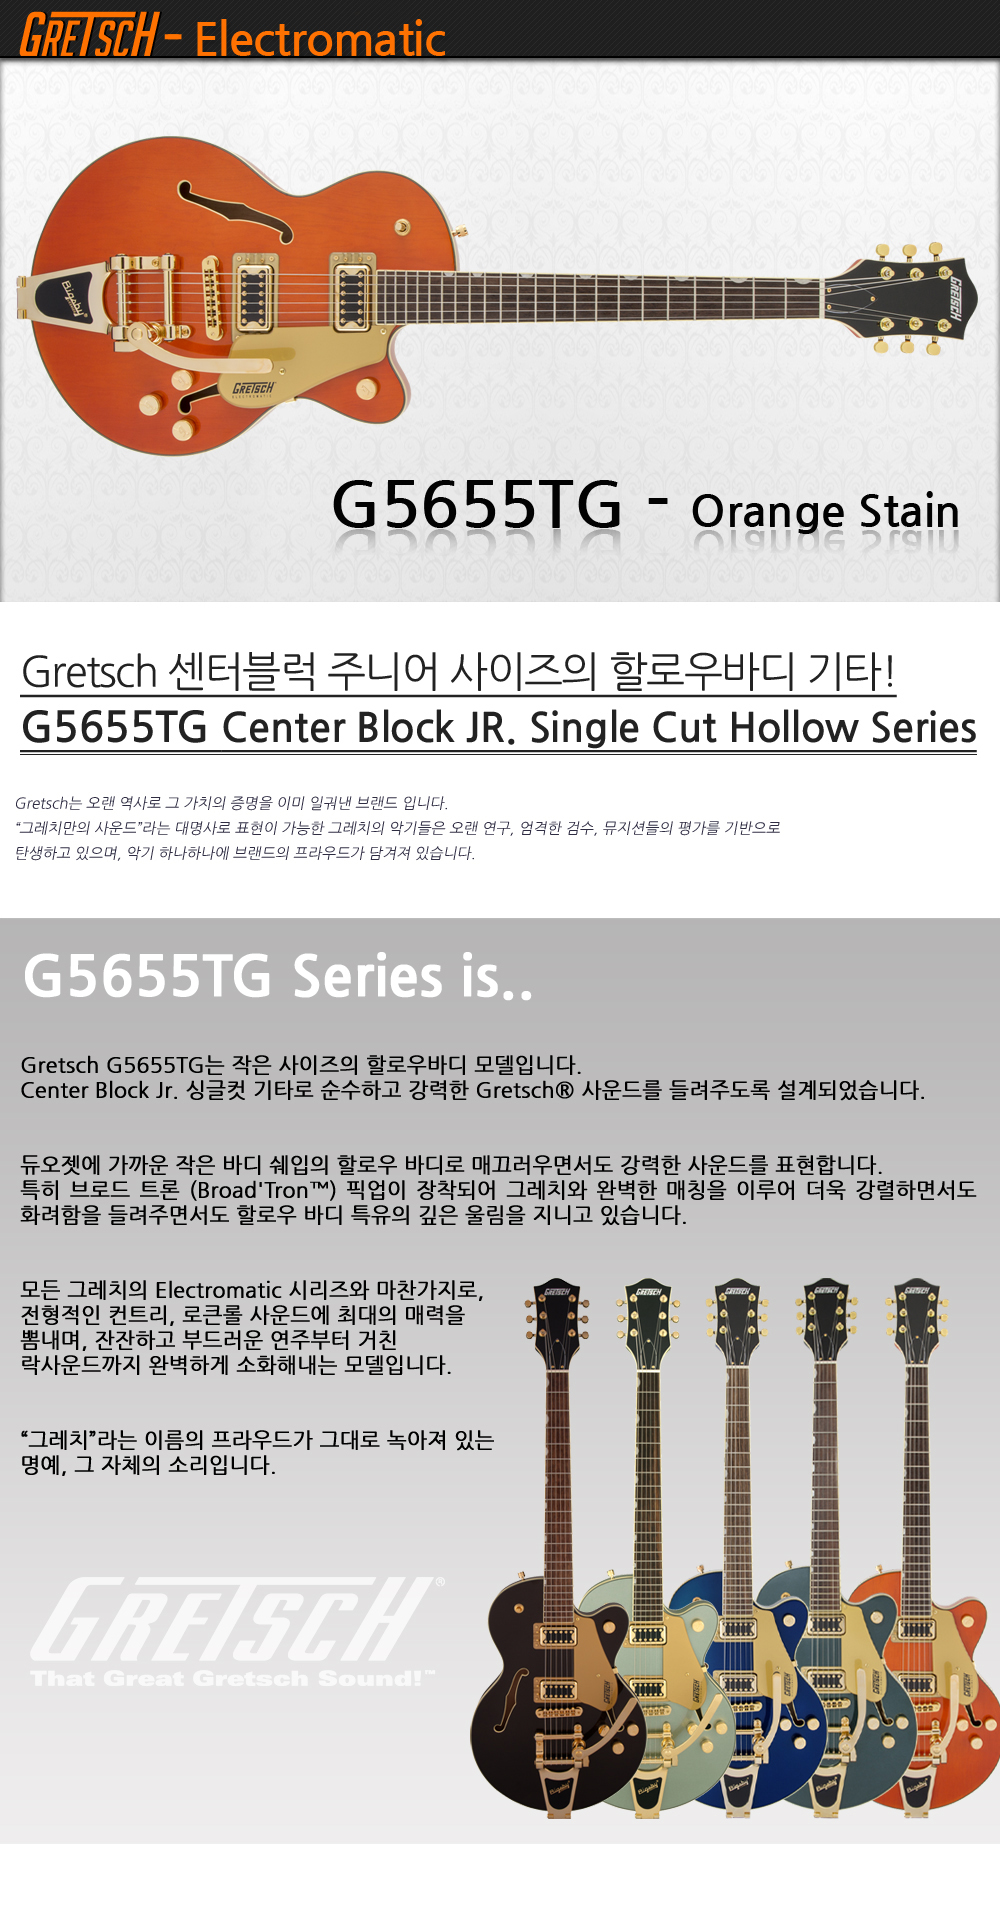 Gretsch-G5655TG-OrangeStain_1_102002.jpg